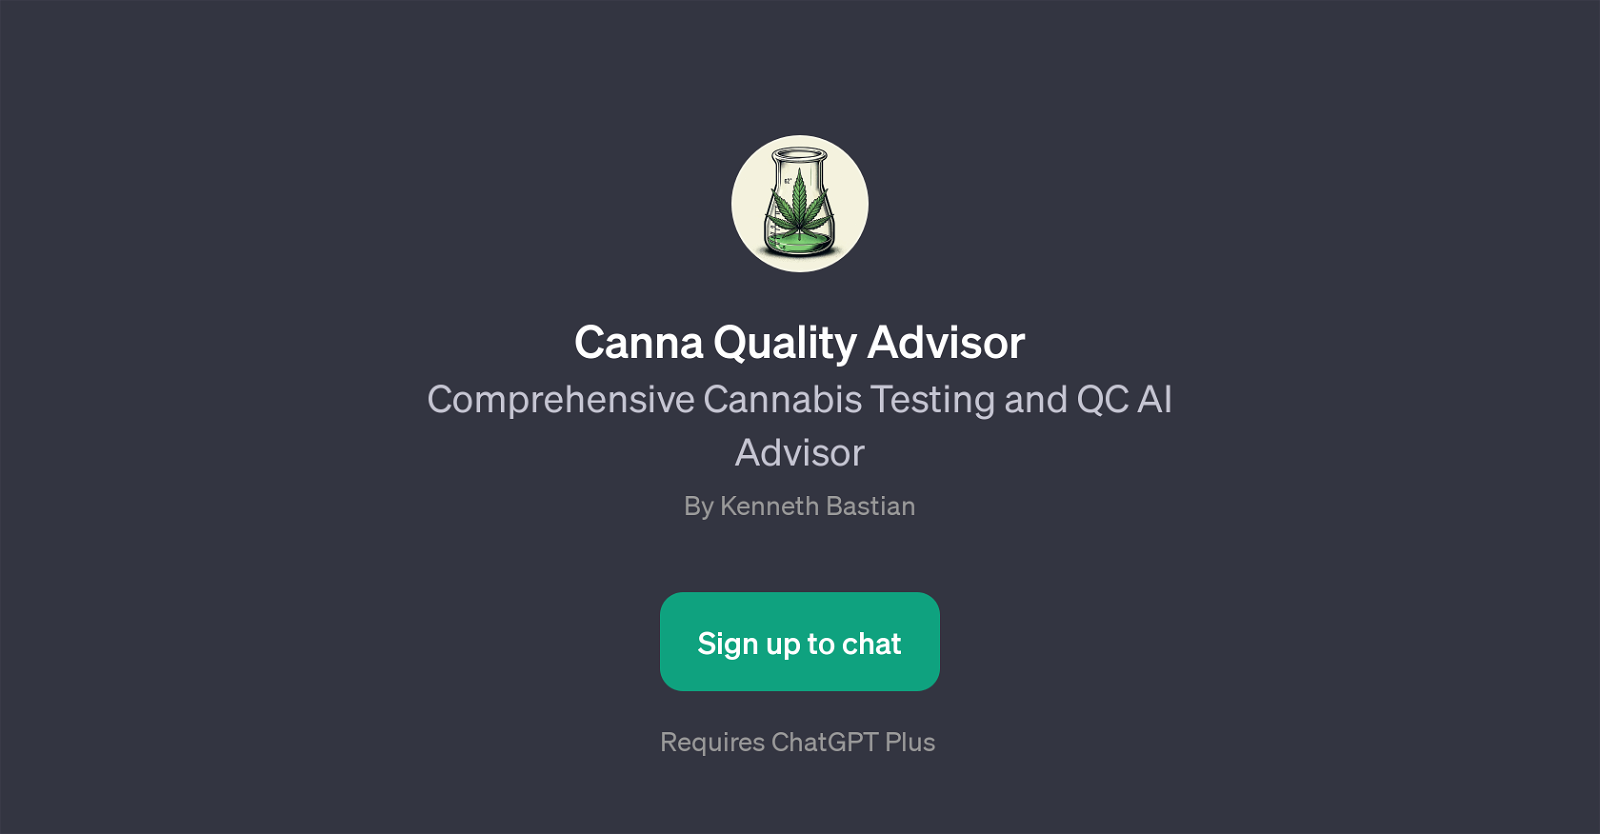 Canna Quality Advisor website